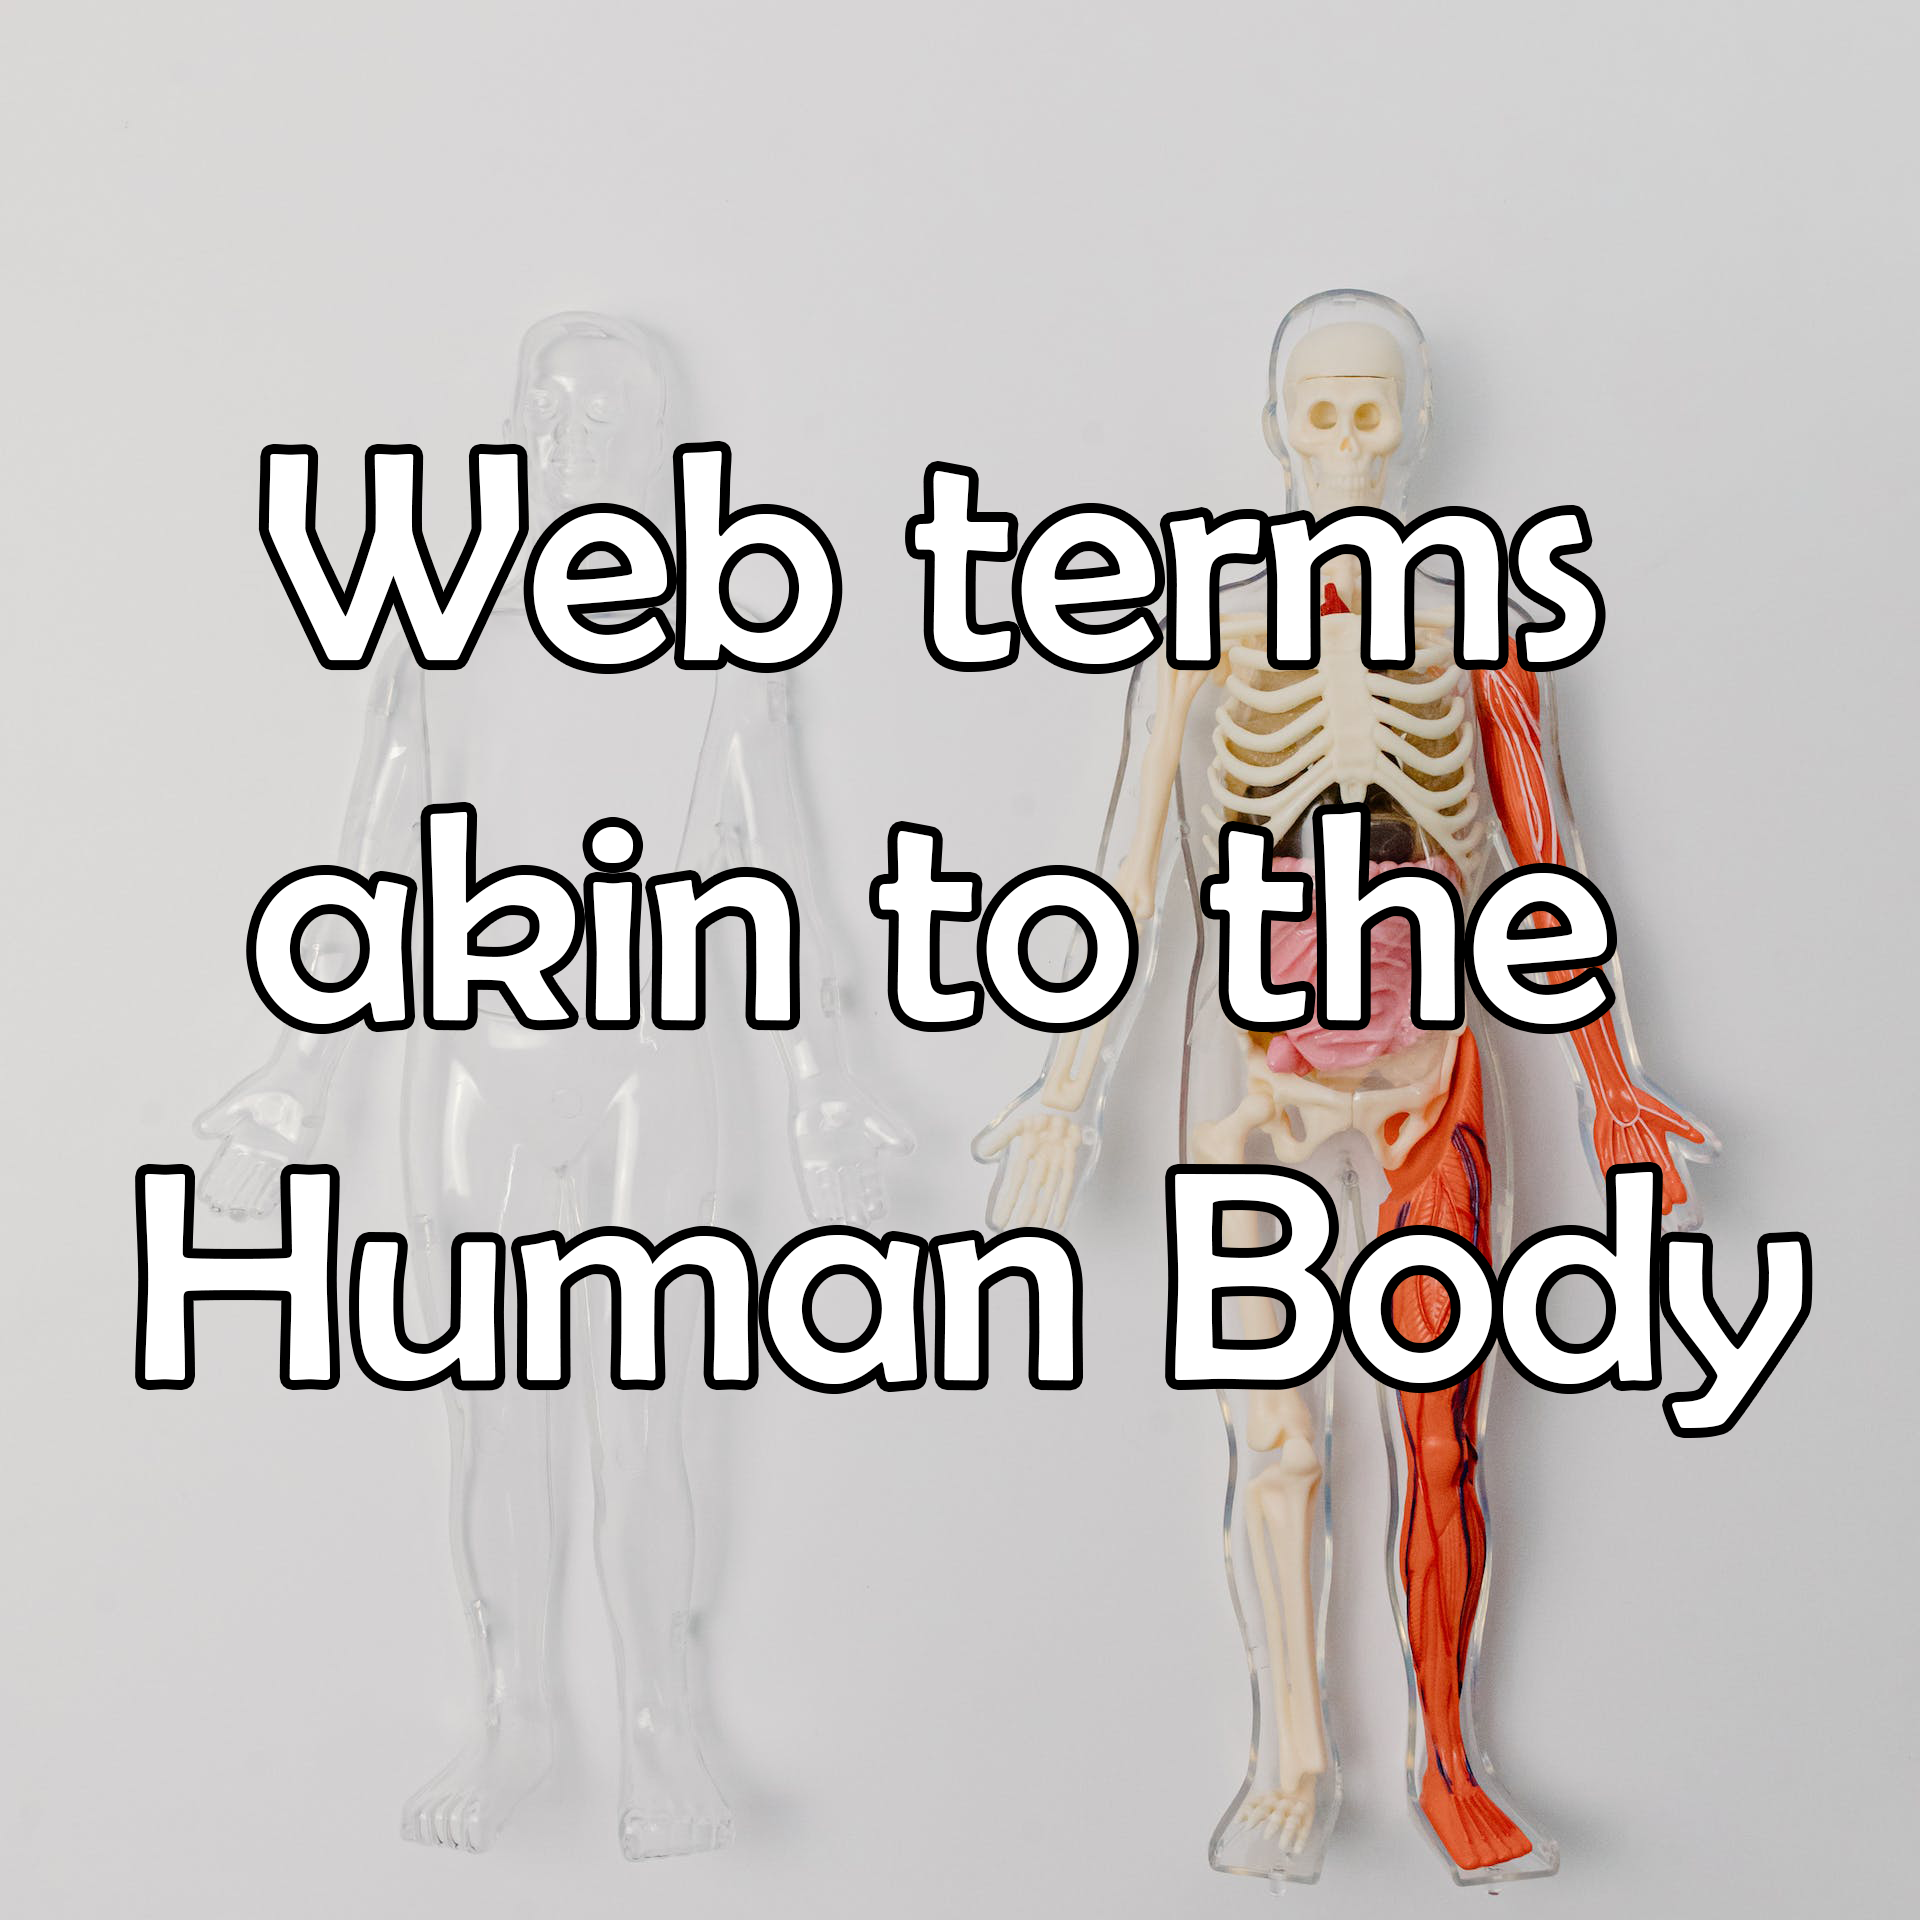 Web Terms Akin to the Human Body